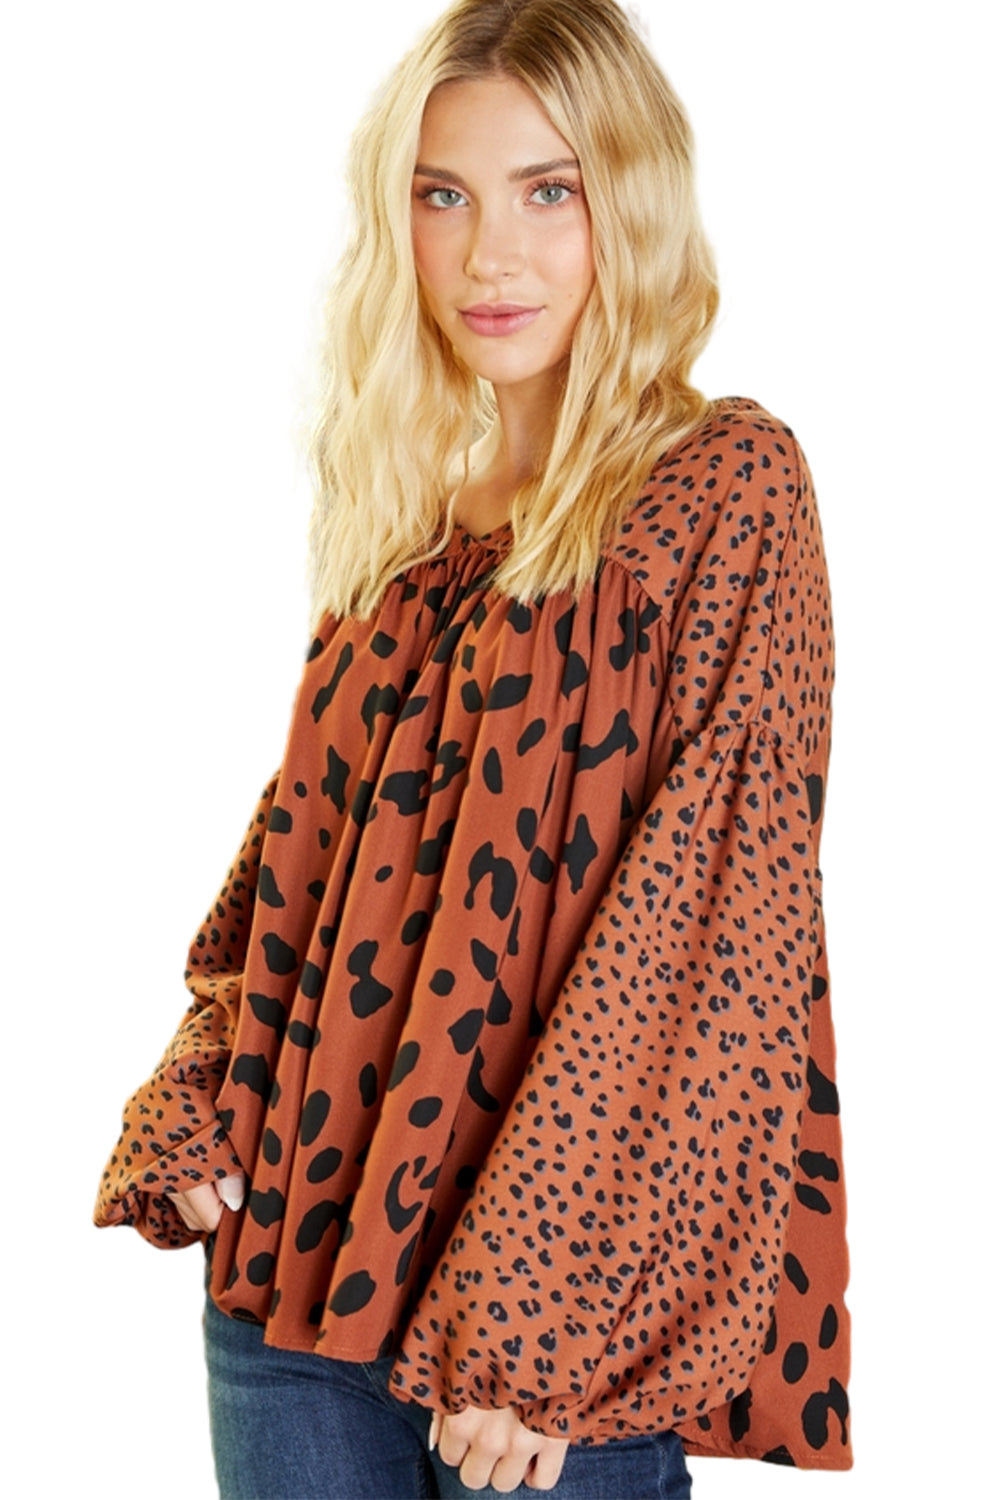 Braune Bluse mit kontrastierenden Leopardenmuster und Blasenärmeln